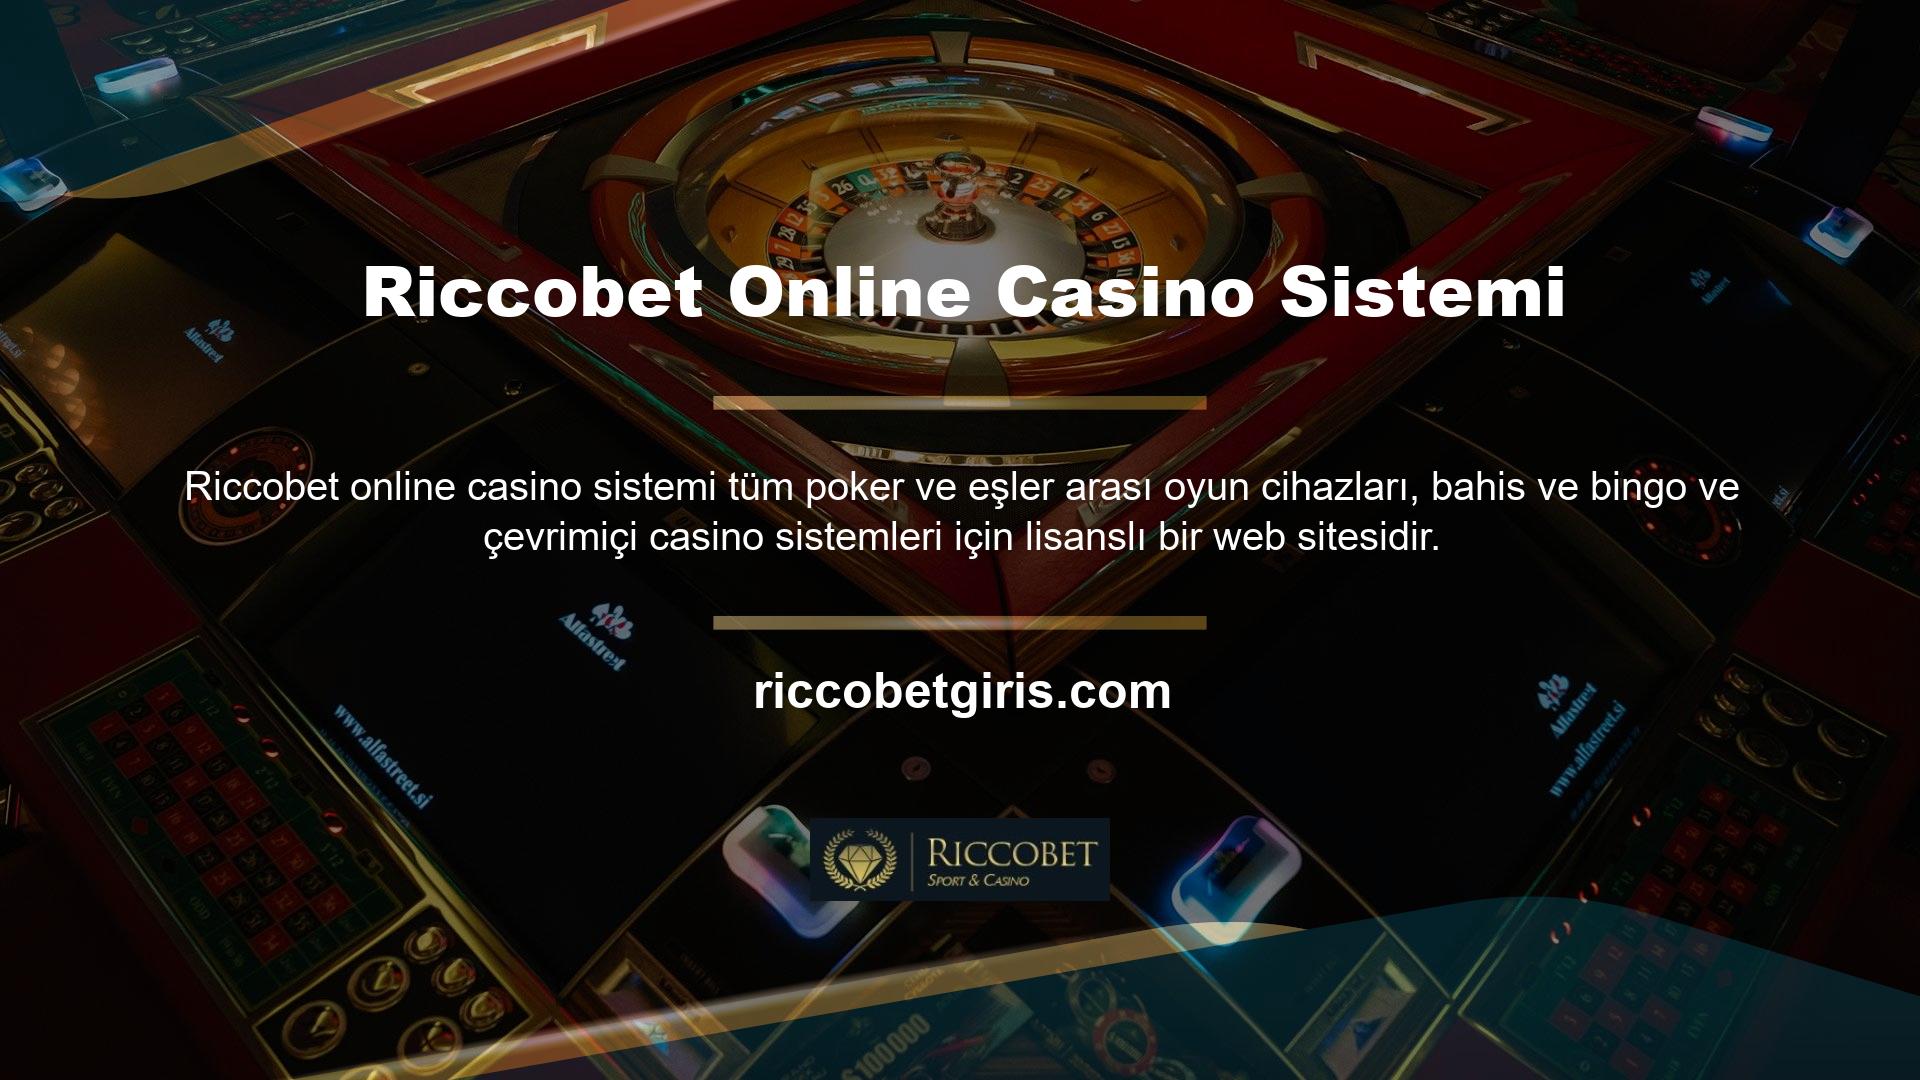 Riccobet online casino sisteminin sunduklarına gelince sistemin ne olduğundan bahsedebiliriz